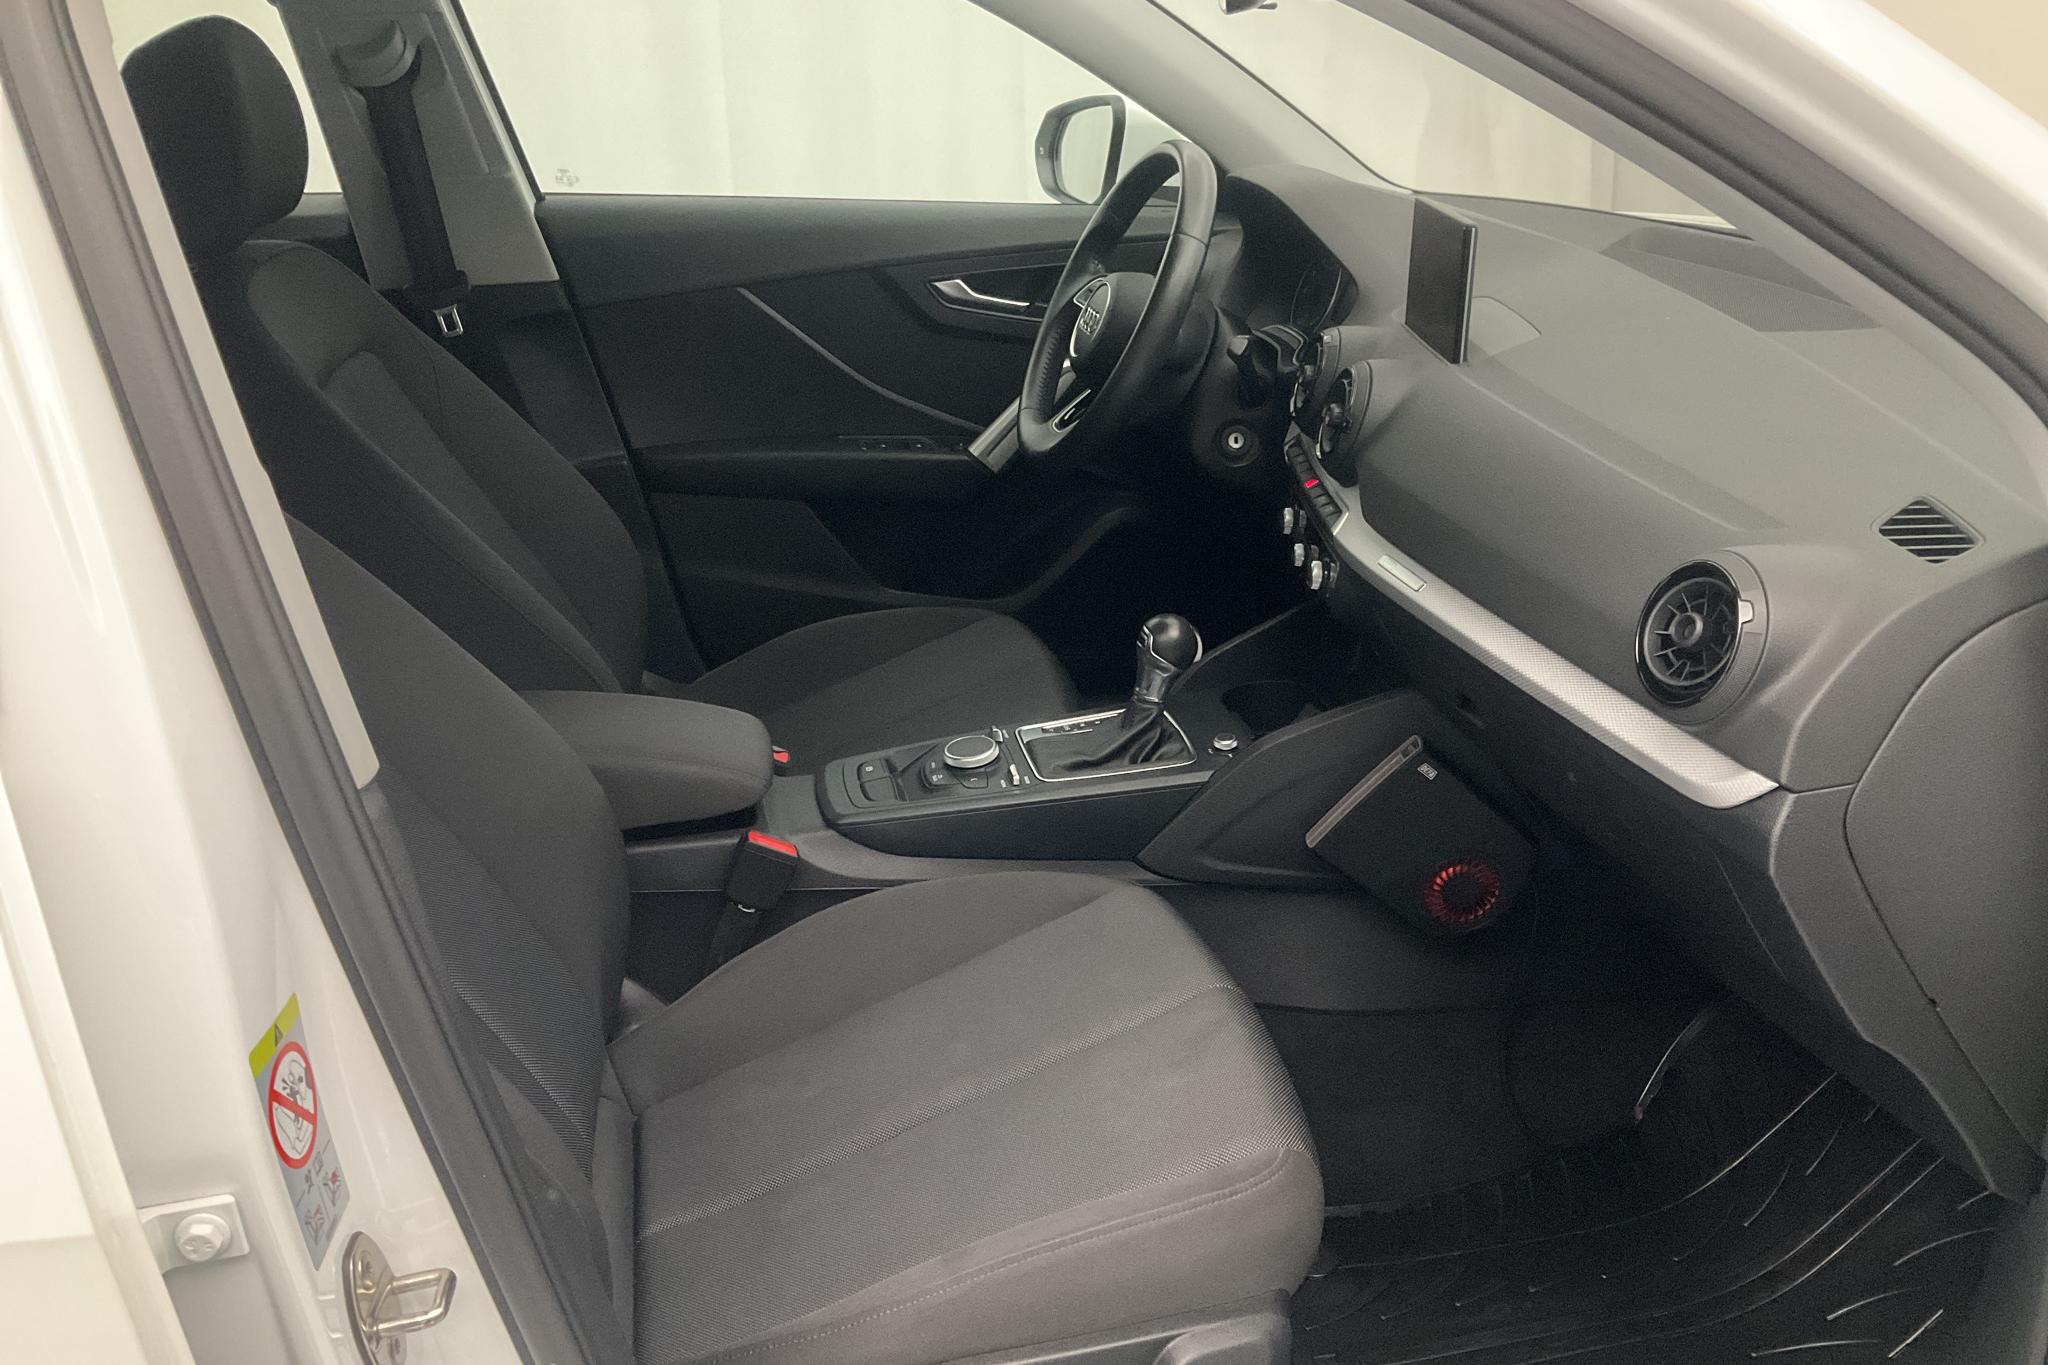 Audi Q2 1.4 TFSI (150hk) - 9 394 mil - Automat - vit - 2018